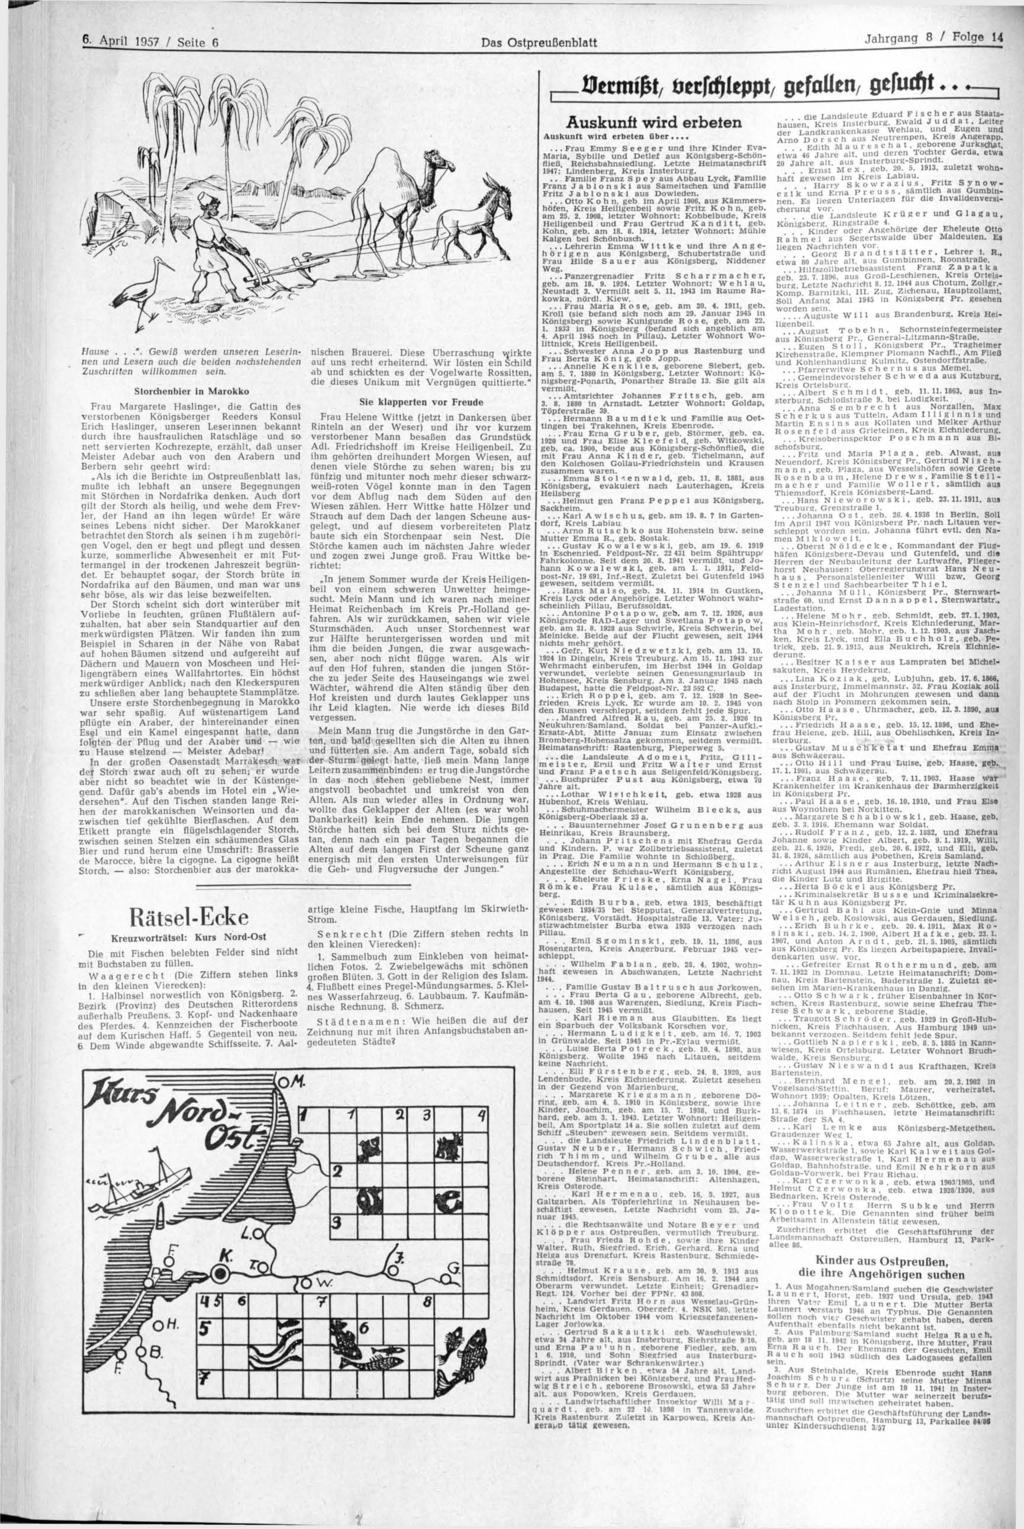 April 1957 / Seite 6 Das Ostpreußenblatt Jahrgang 8 / Folge 14 Hause...". Gewiß werden unseren Leserinnen und Lesern auch die beiden nachstehenden Zuschritten willkommen sein.